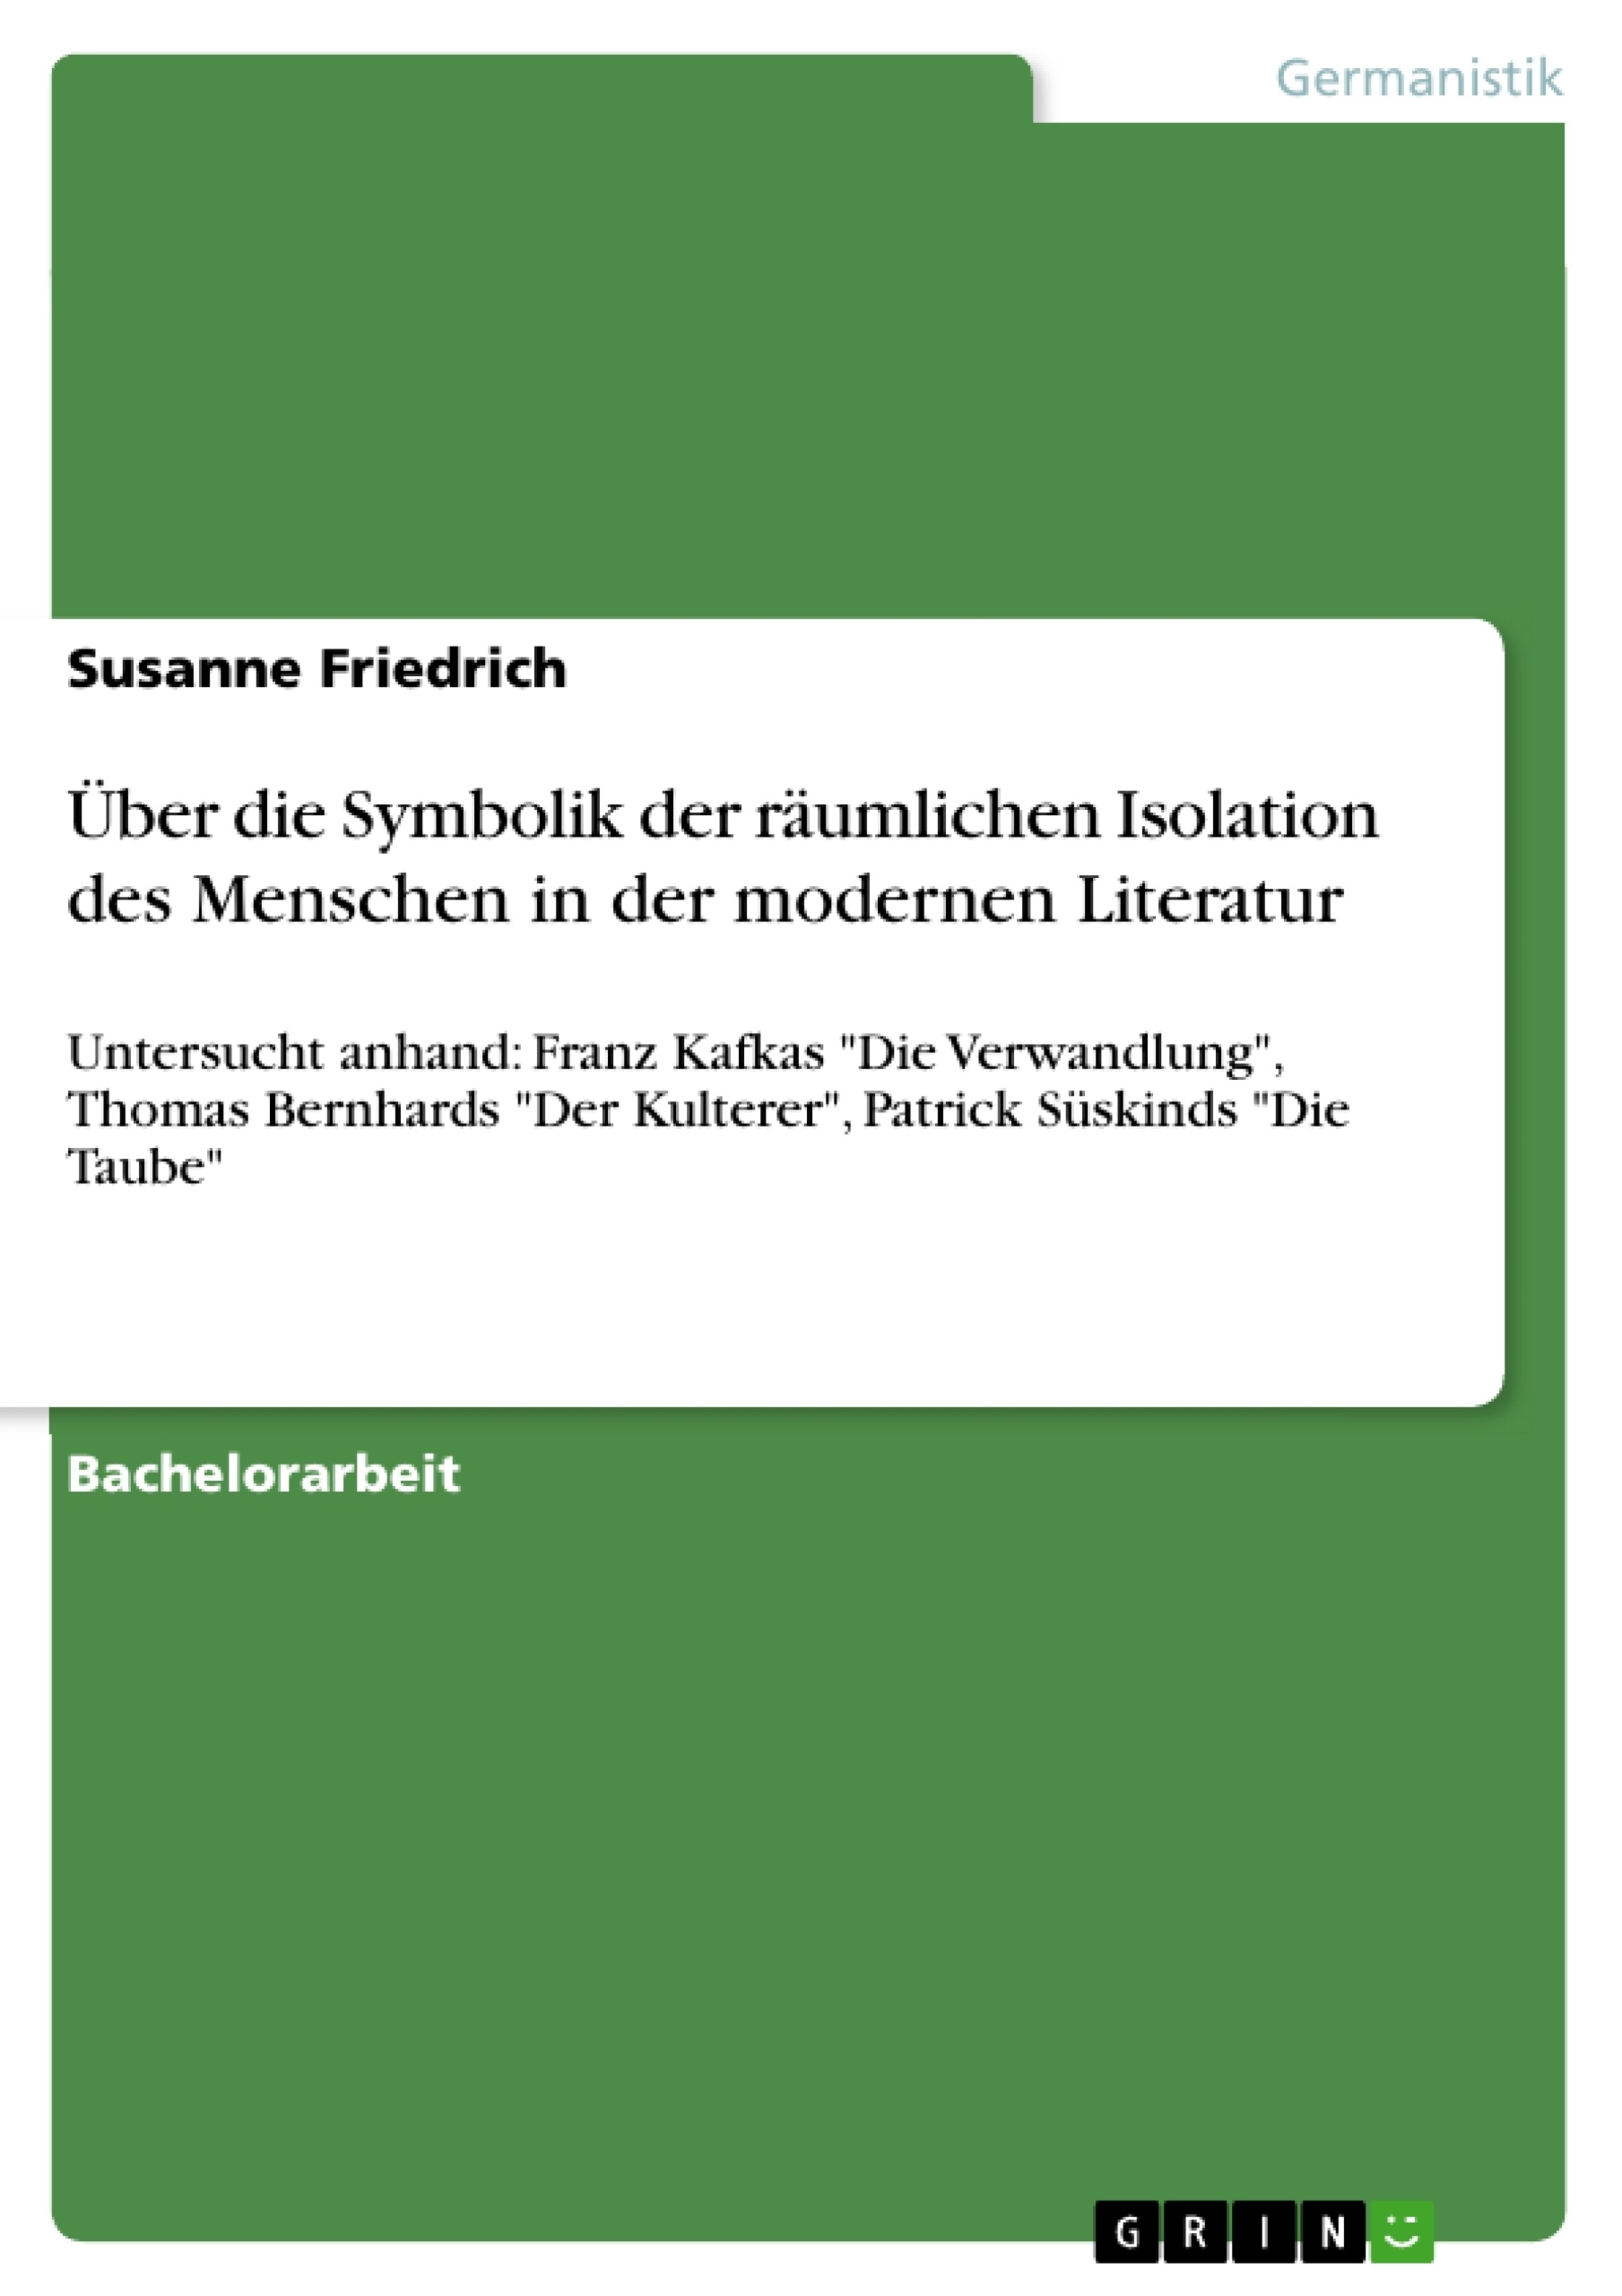 Title: Über die Symbolik der räumlichen Isolation des Menschen in der modernen Literatur